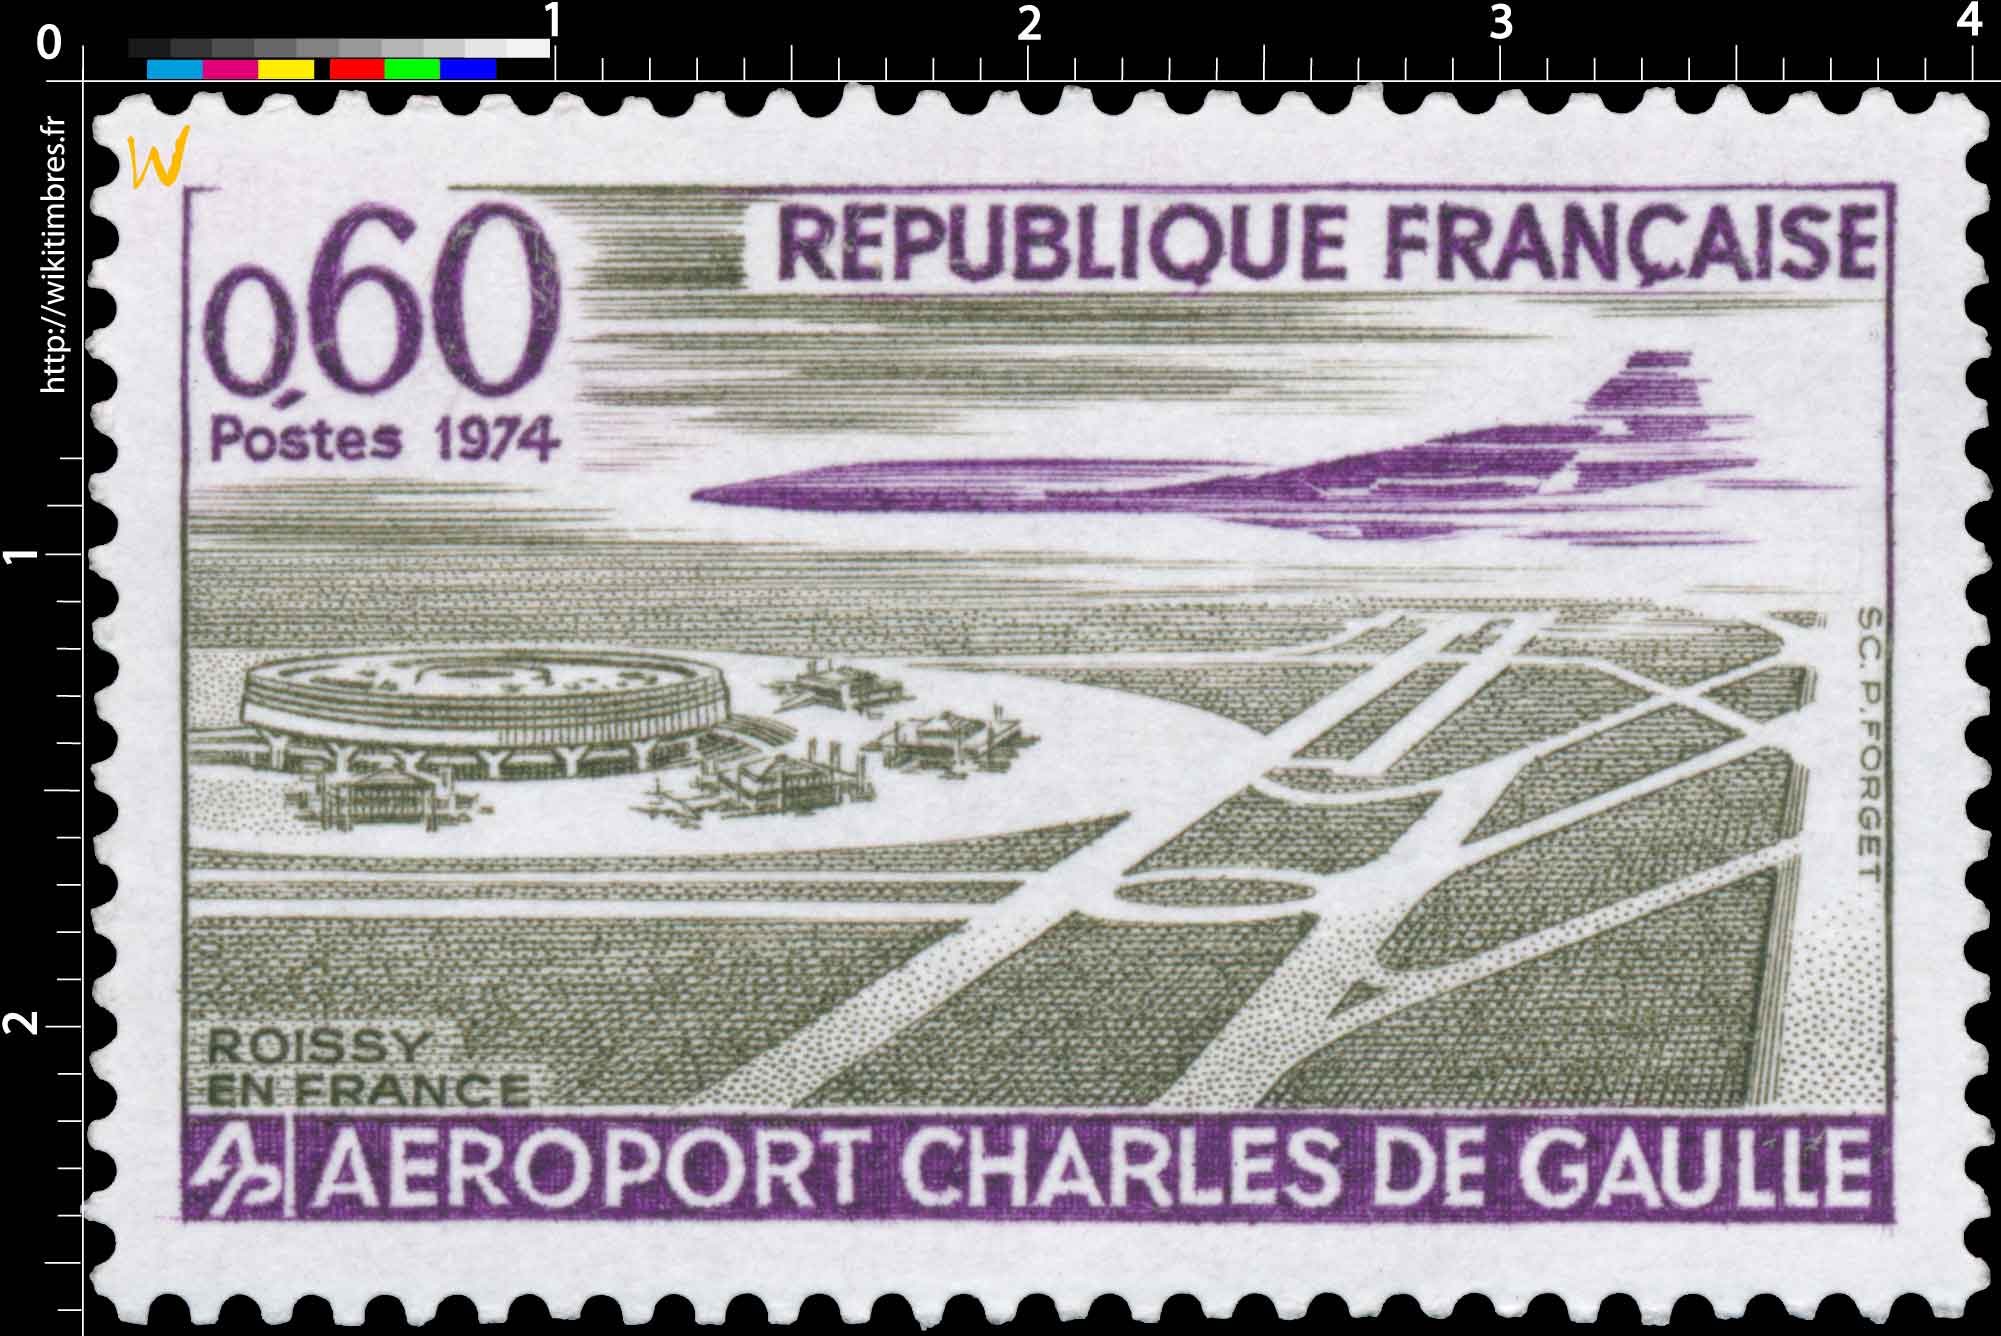 1974 ROISSY EN FRANCE AÉROPORT CHARLES DE GAULLE